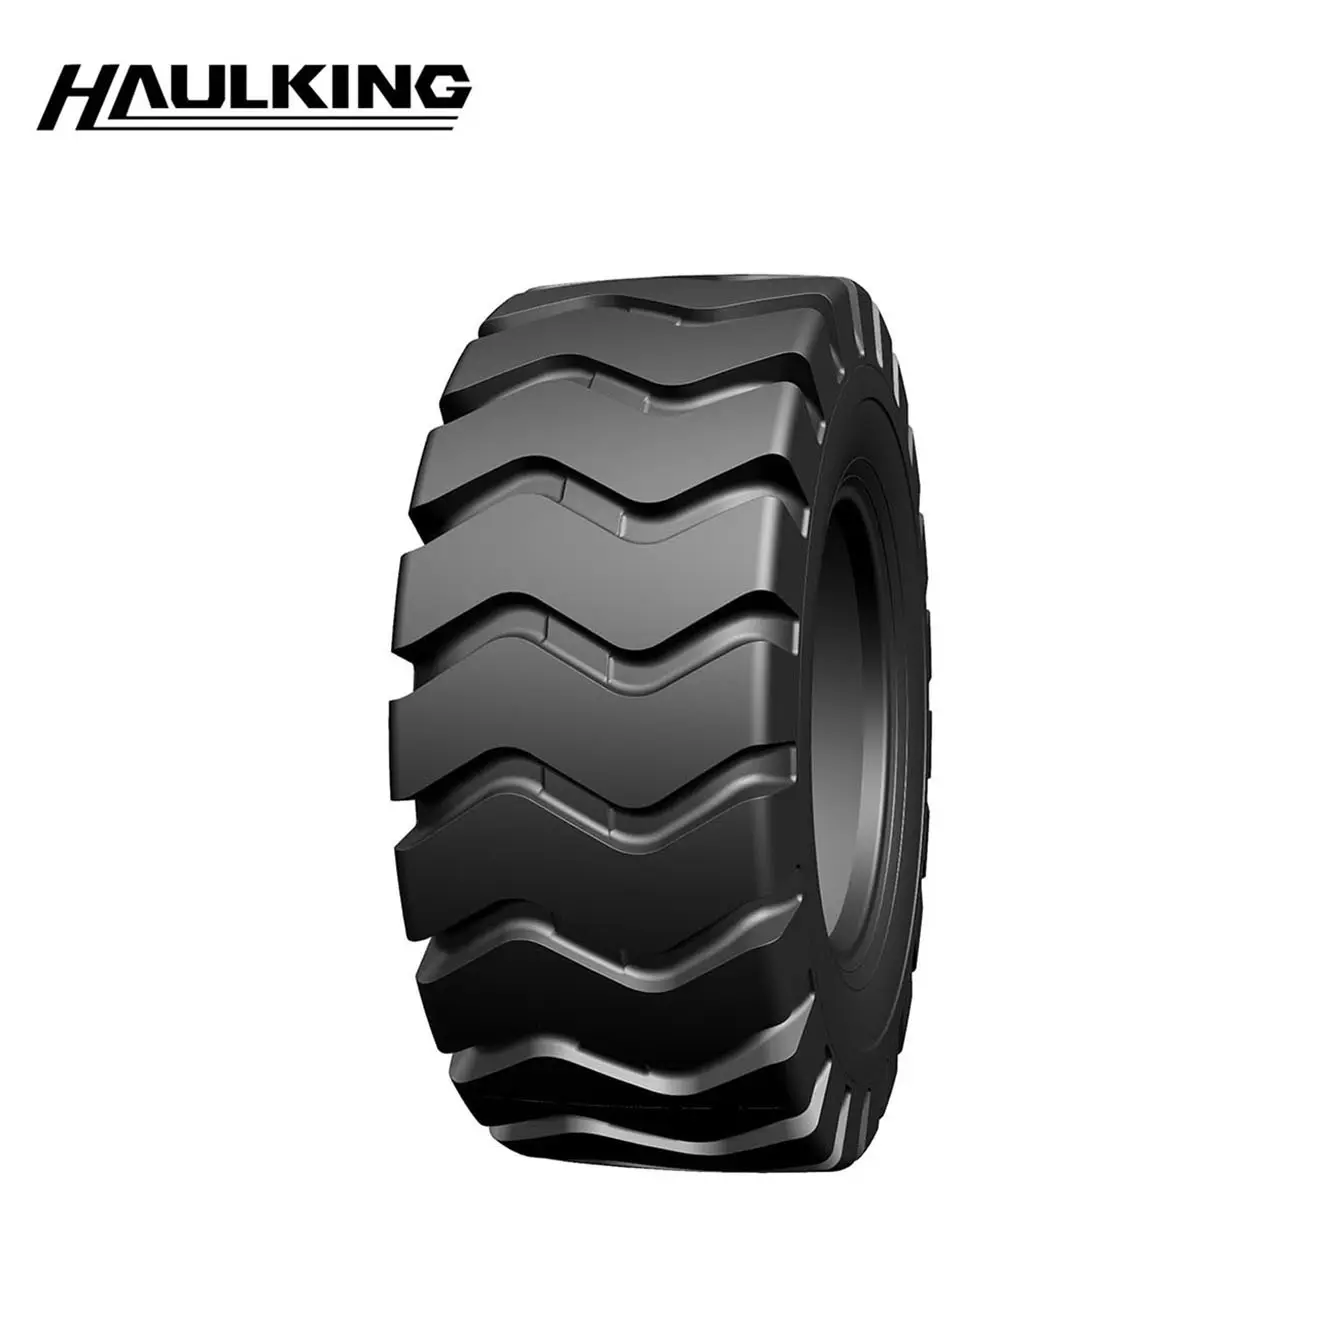 Top quality factory OTR tires E3/L3 E3/L3B L5 loader Offroad Wheels Tires 17.5-25 20.5-25 23.5-25 26.5-25 16/70-20 for sale